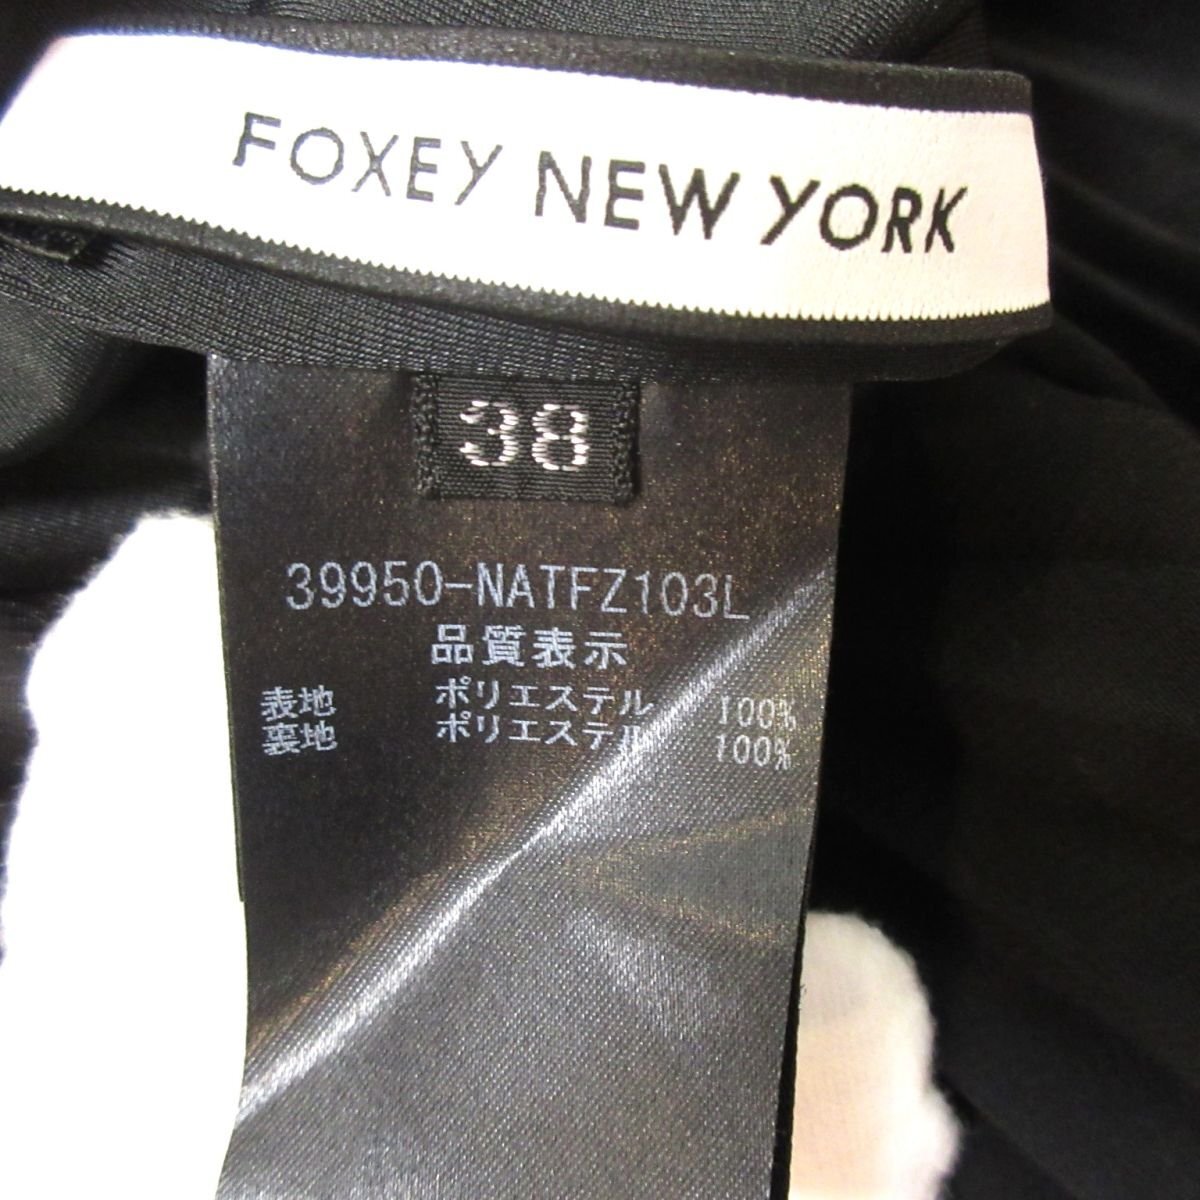 美品 FOXEY NEW YORK フォクシーニューヨーク ティアードプリーツ ノースリーブ ブラウス 39950 38サイズ ブラック_画像6